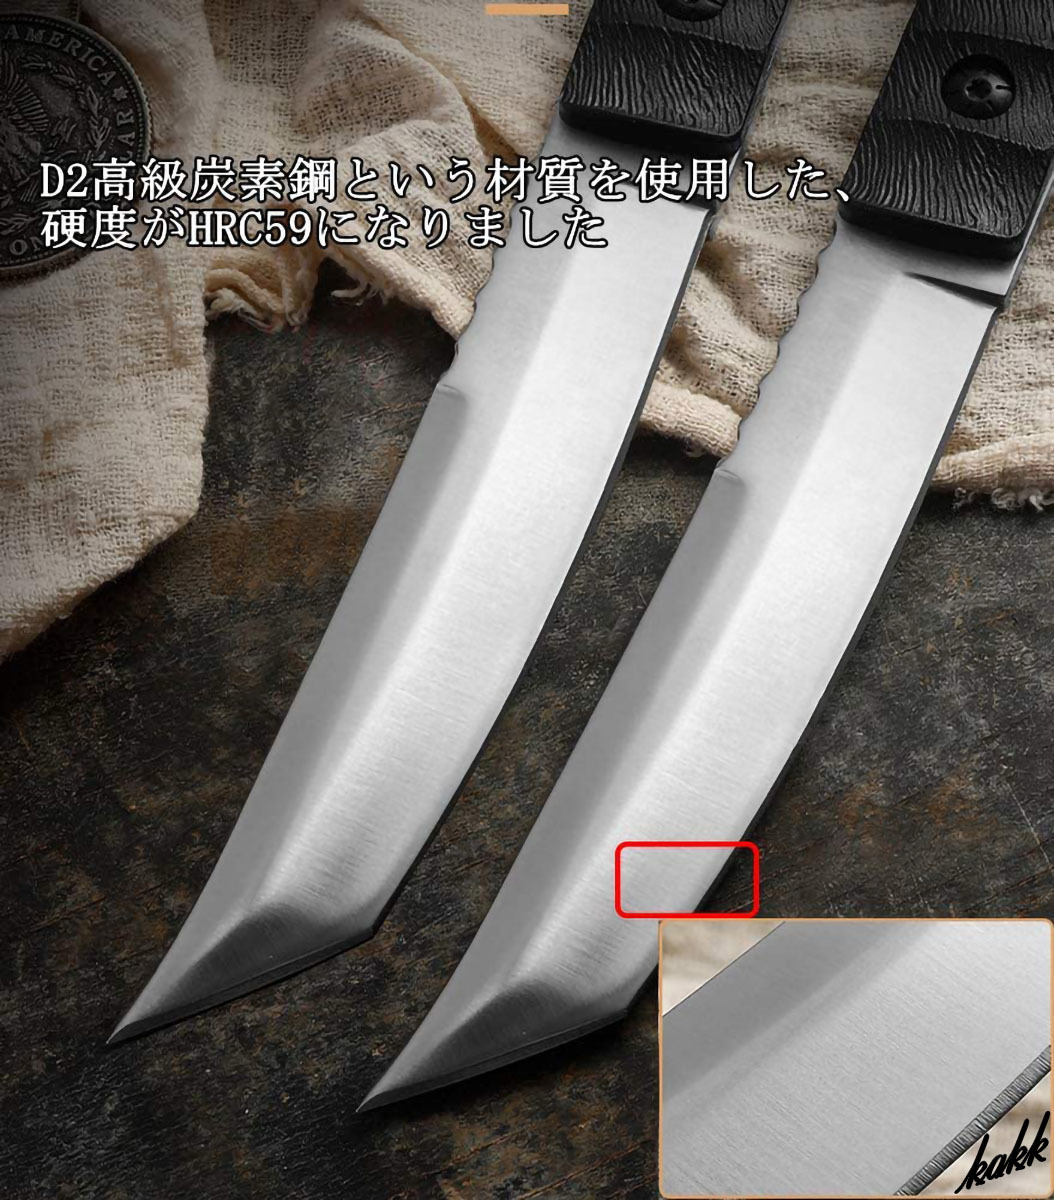 【日本刀のようなブレード】 シースナイフ ステンレススチール フルタング G10 アウトドア用包丁 狩猟ナイフ キャンプ アウトドア_画像3